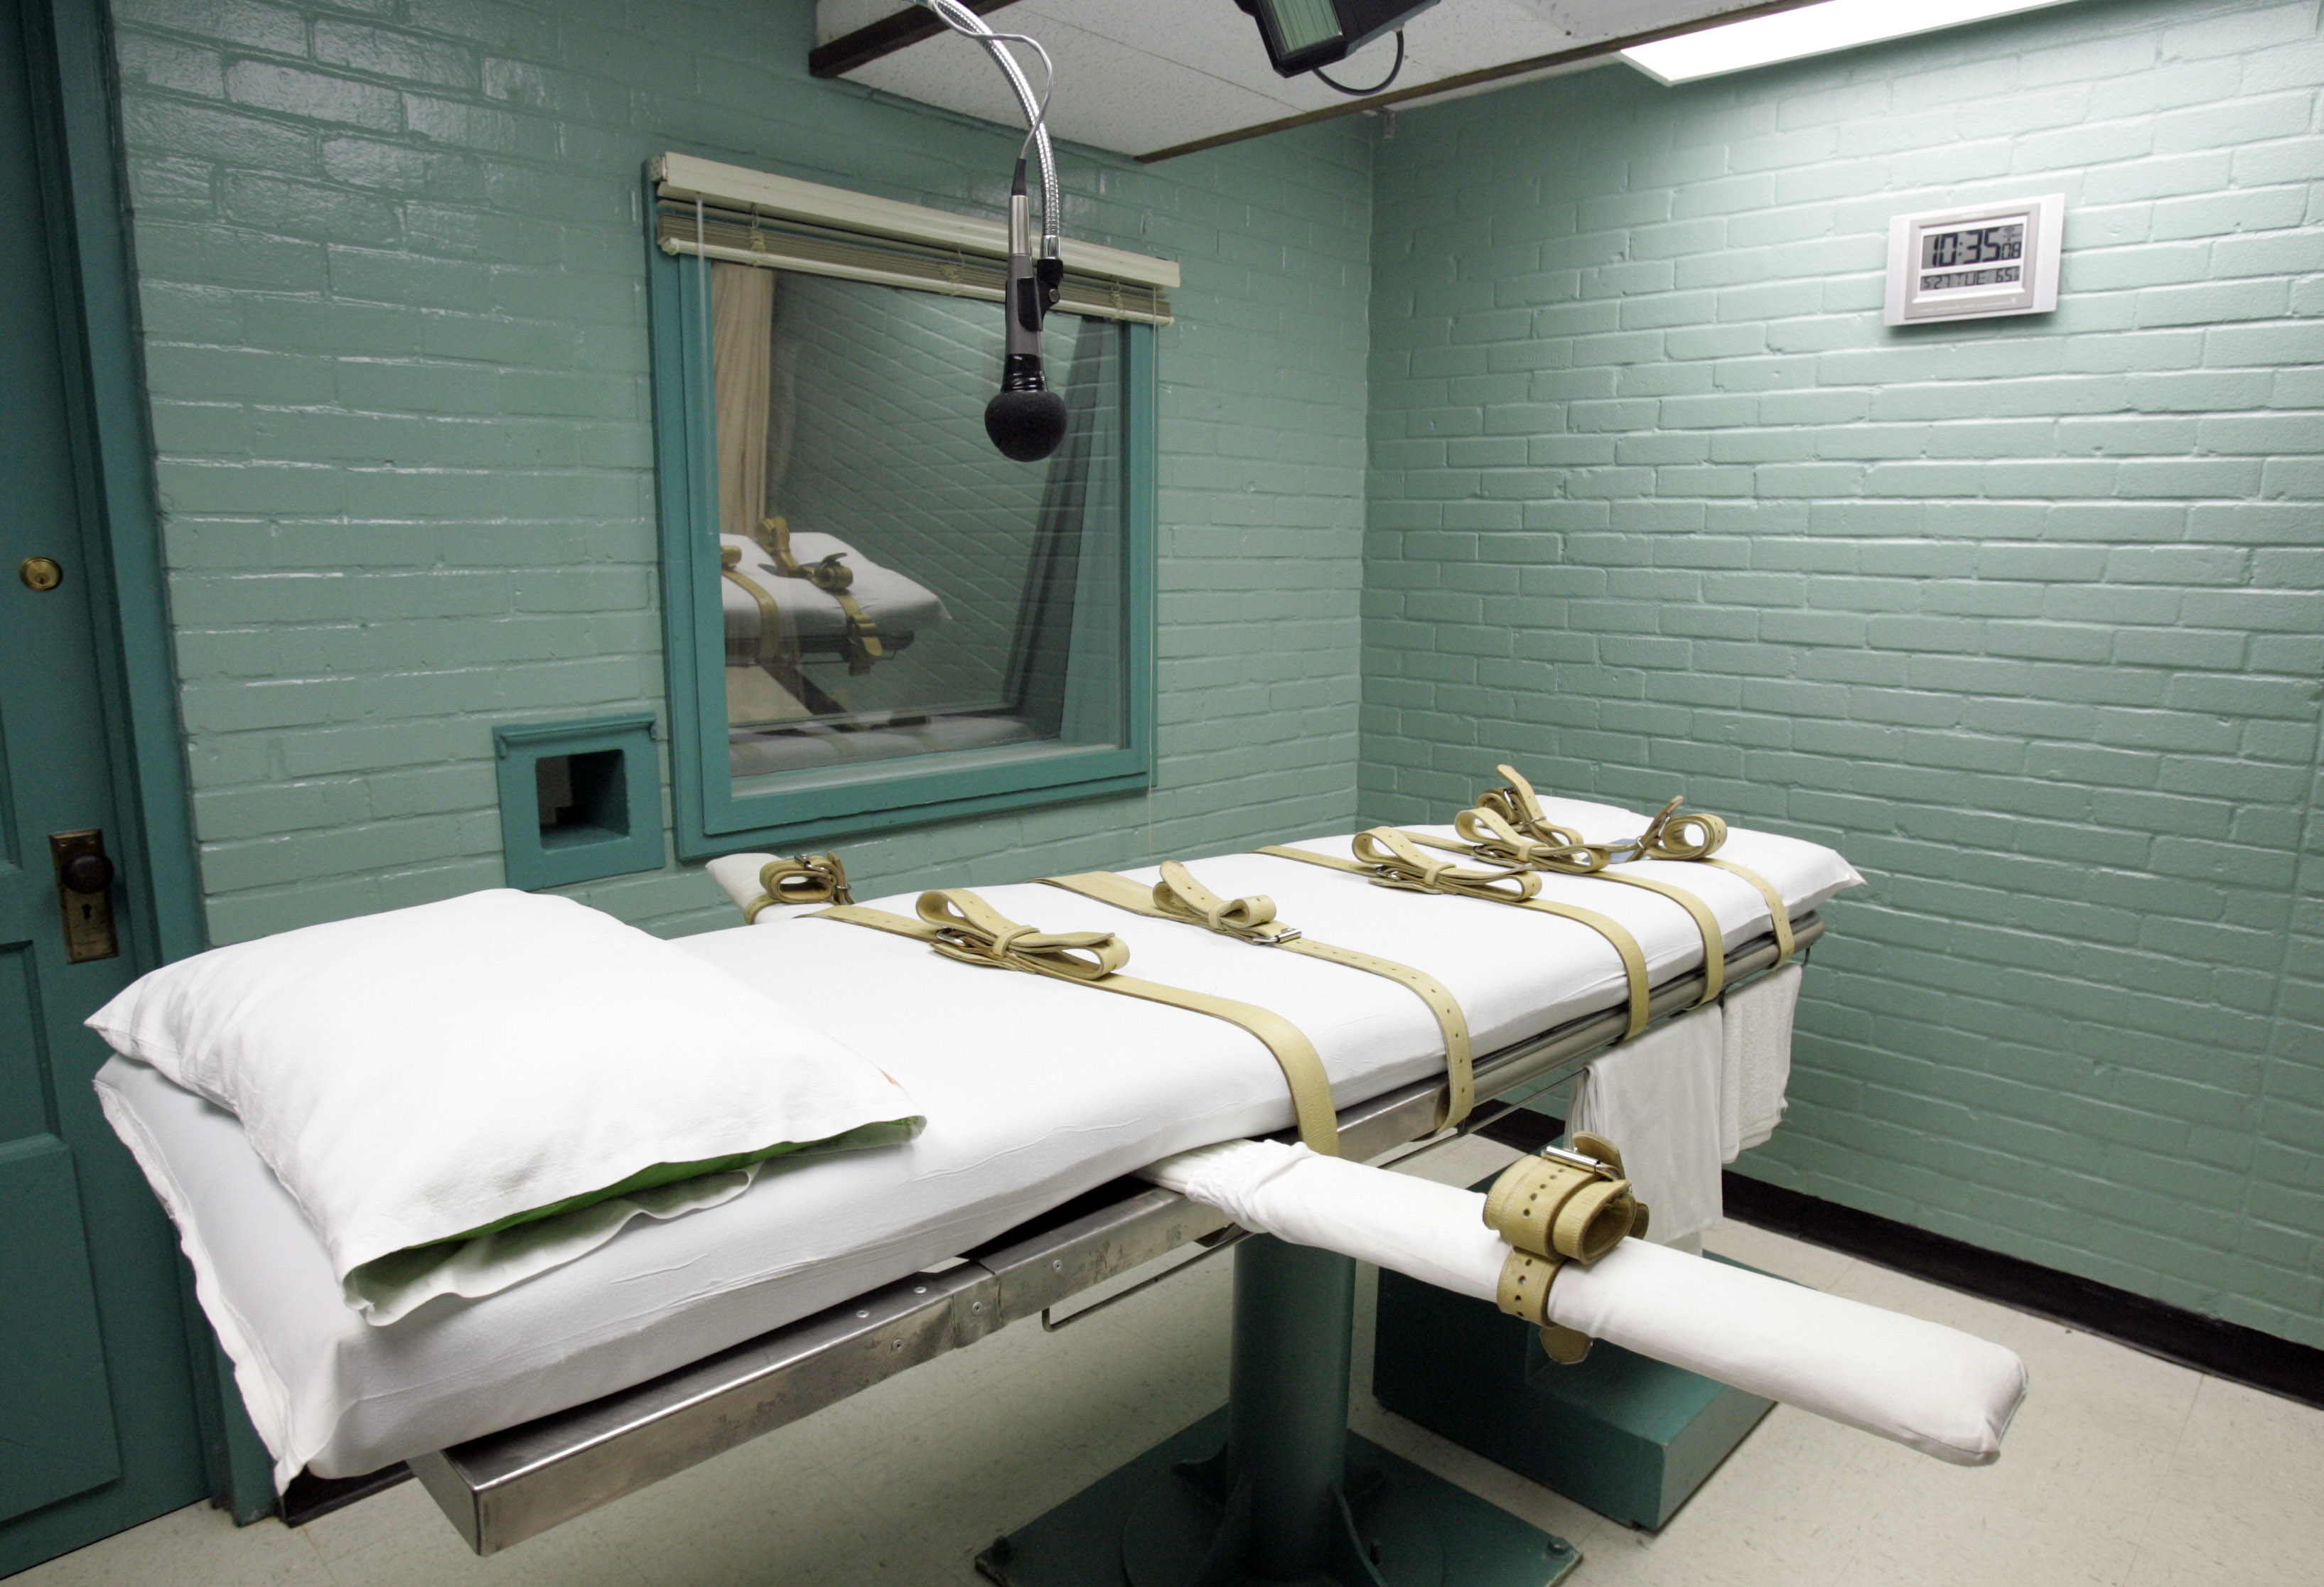 ΗΠΑ και Ευρώπη καταδικάζουν την εκτέλεση-φρίκη στην Οκλαχόμα